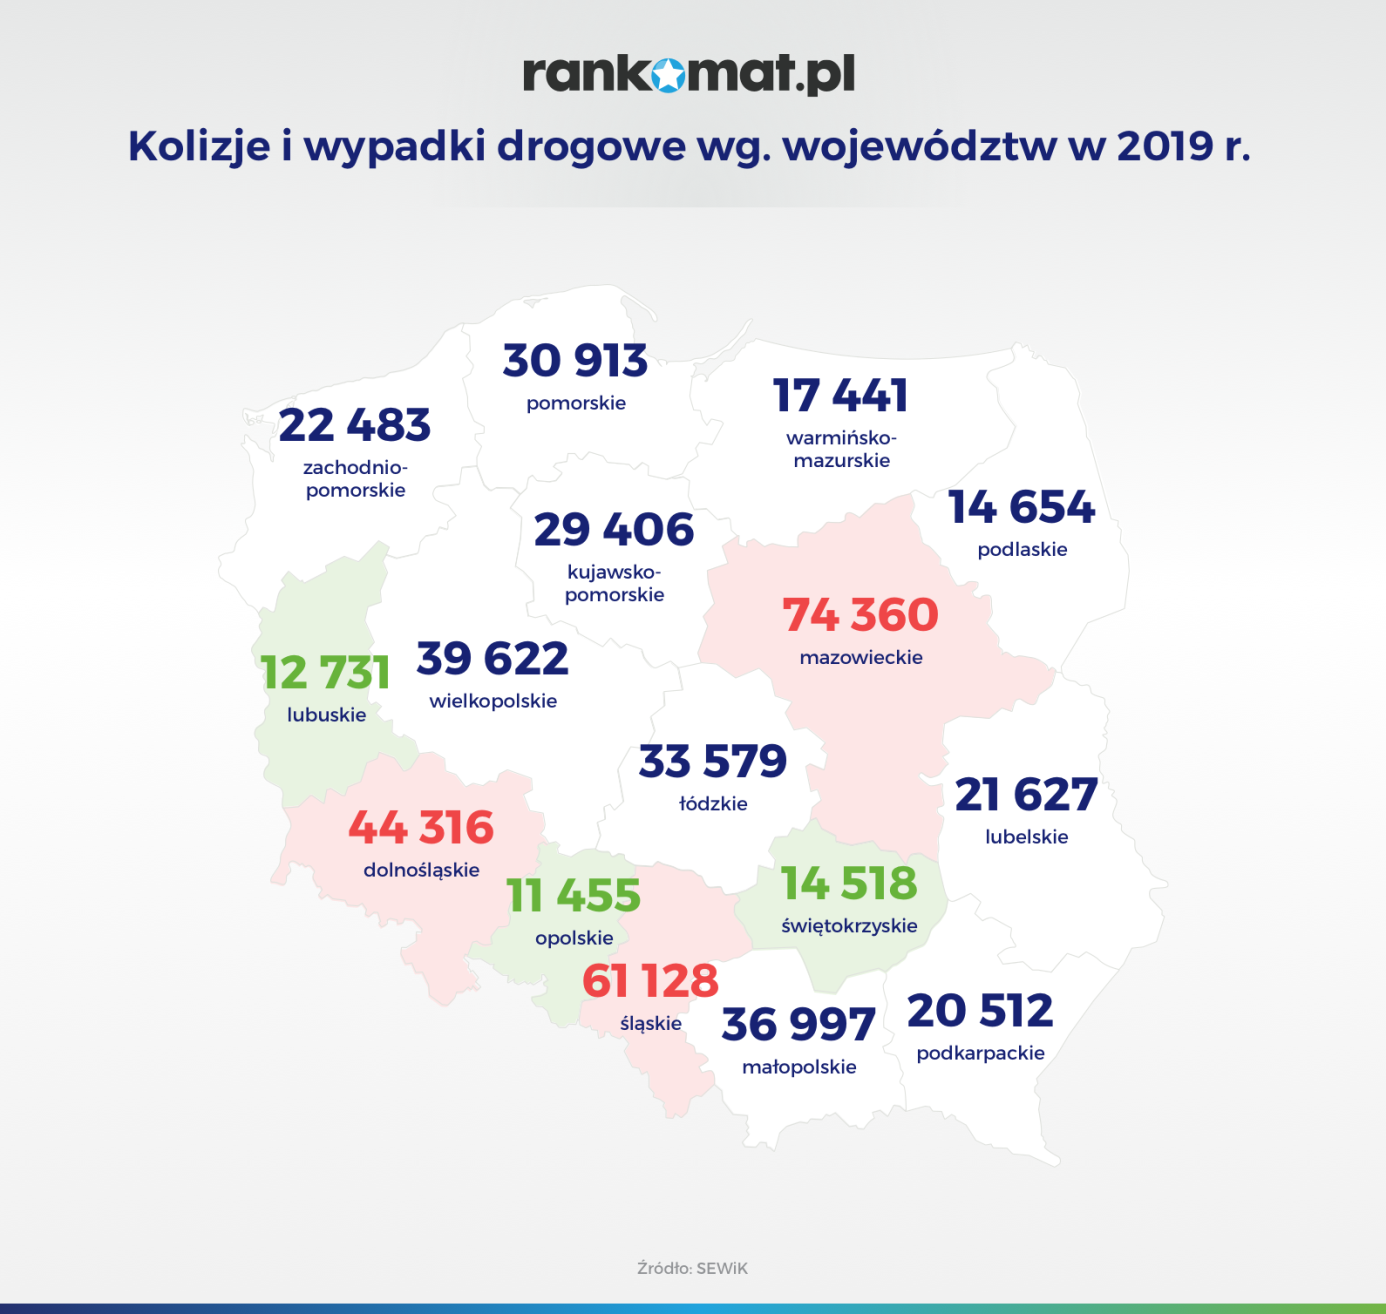 Kolizje i wypadki drogowe wg. województw w 2019 r_v1 (1).png